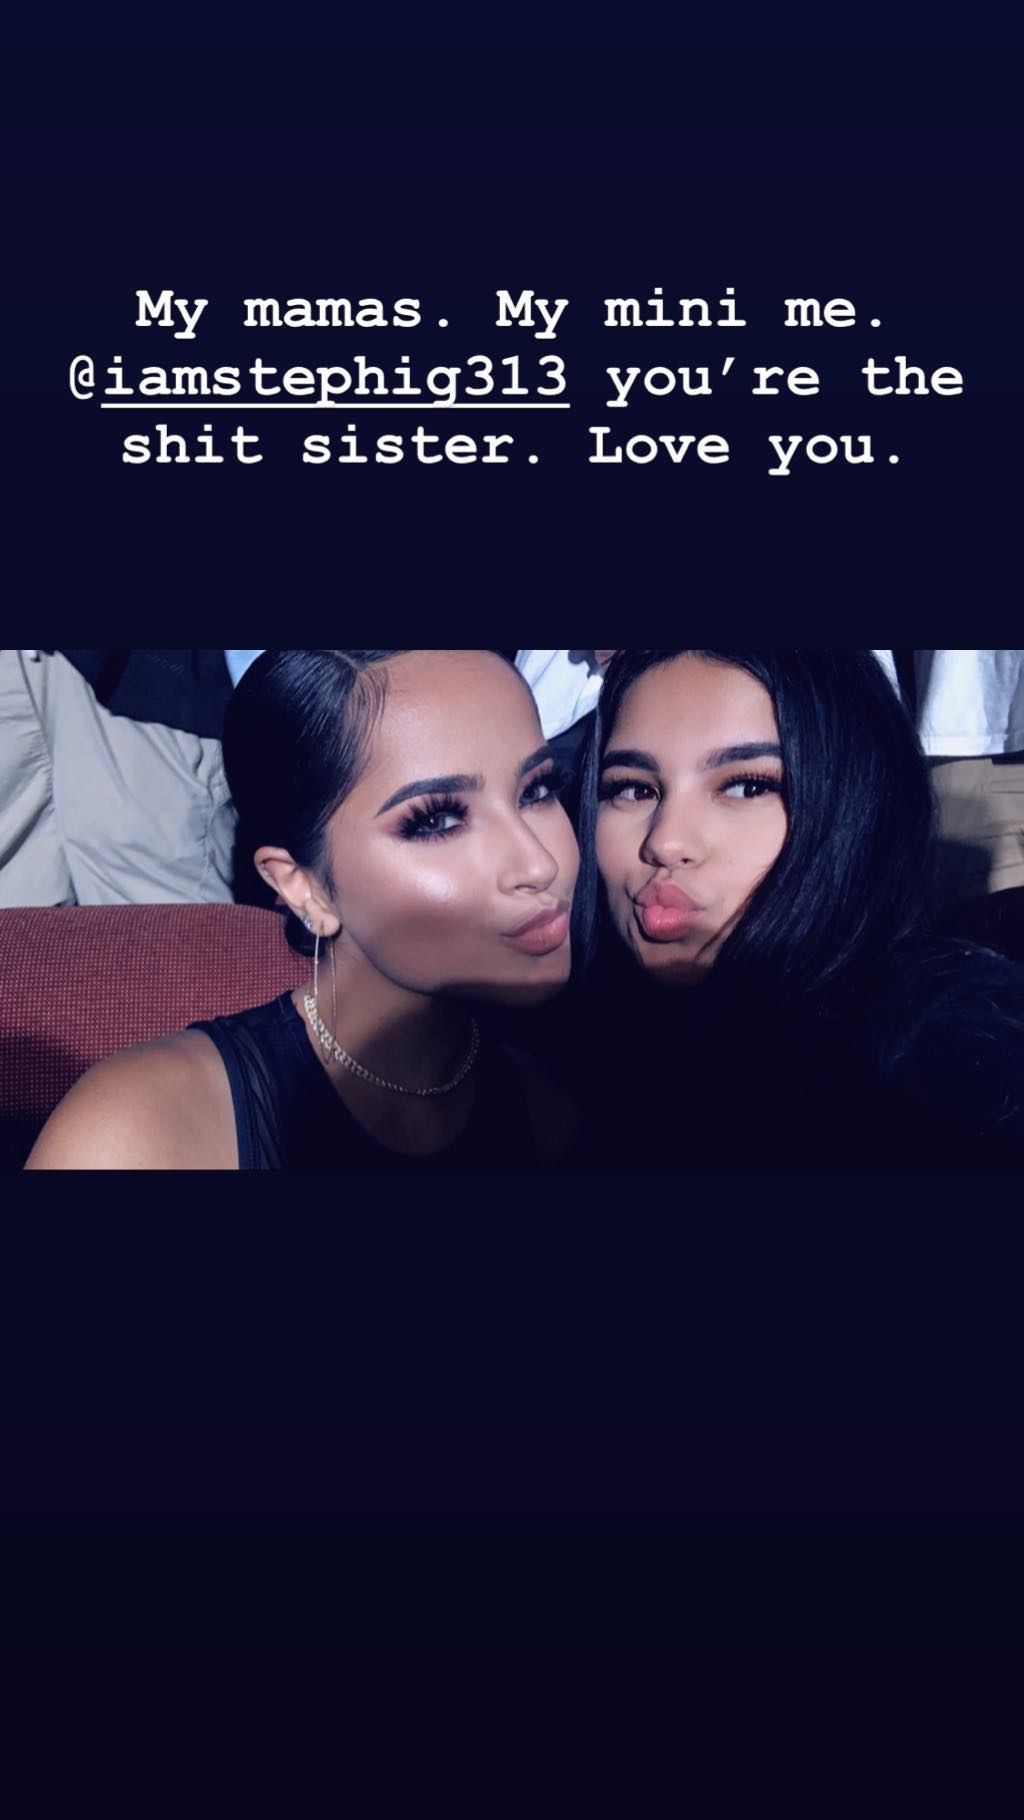 La cantante compartió un conmovedor mensaje a su hermana. (Foto: Instagram)